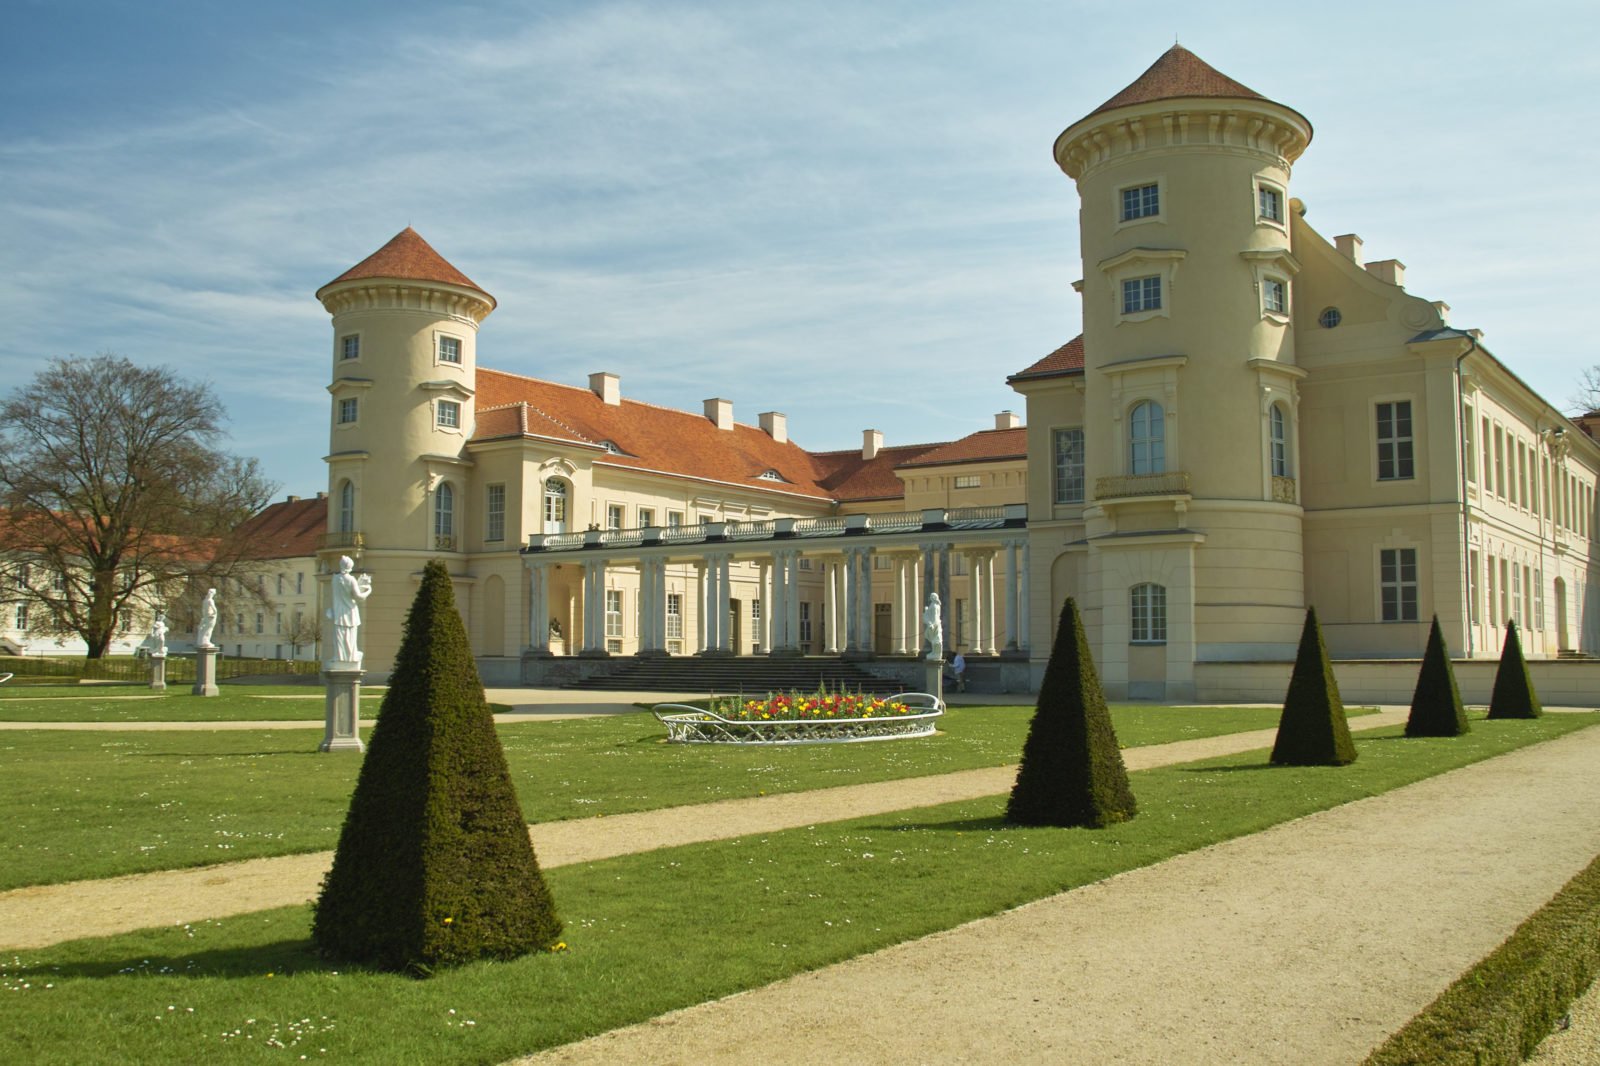 Zu sehen ist das Schloss Rheinsberg von hinten. Besonders deutlich sind die beiden Türme mit einem roten Dach und einem sandfarbenen Anstrich.